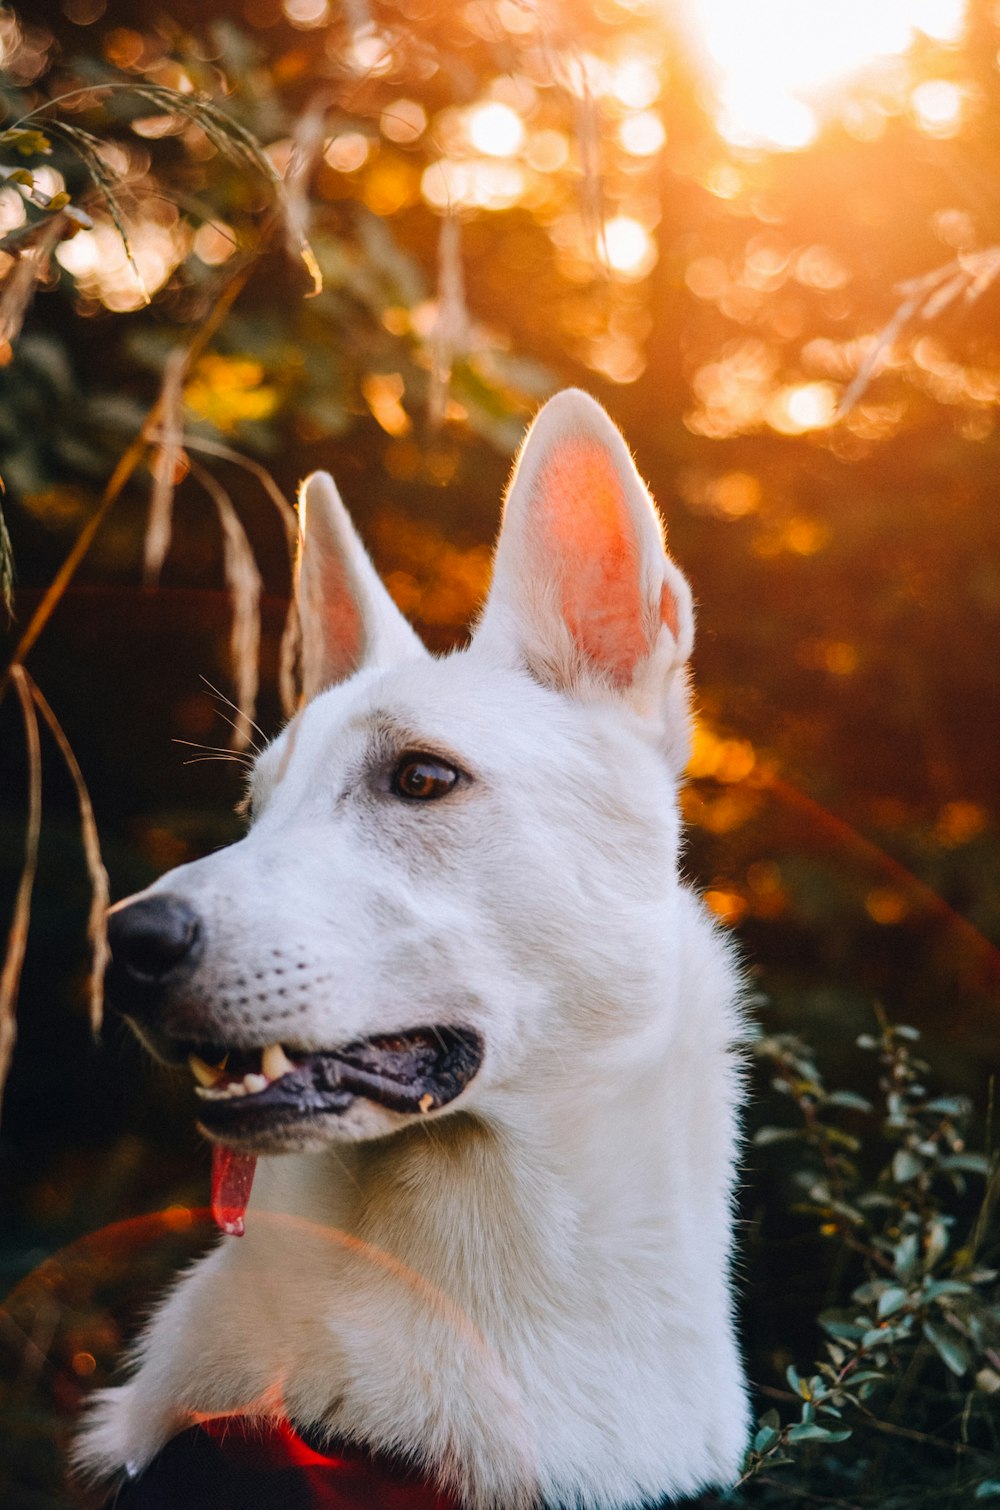 white short coated dog with red eyes